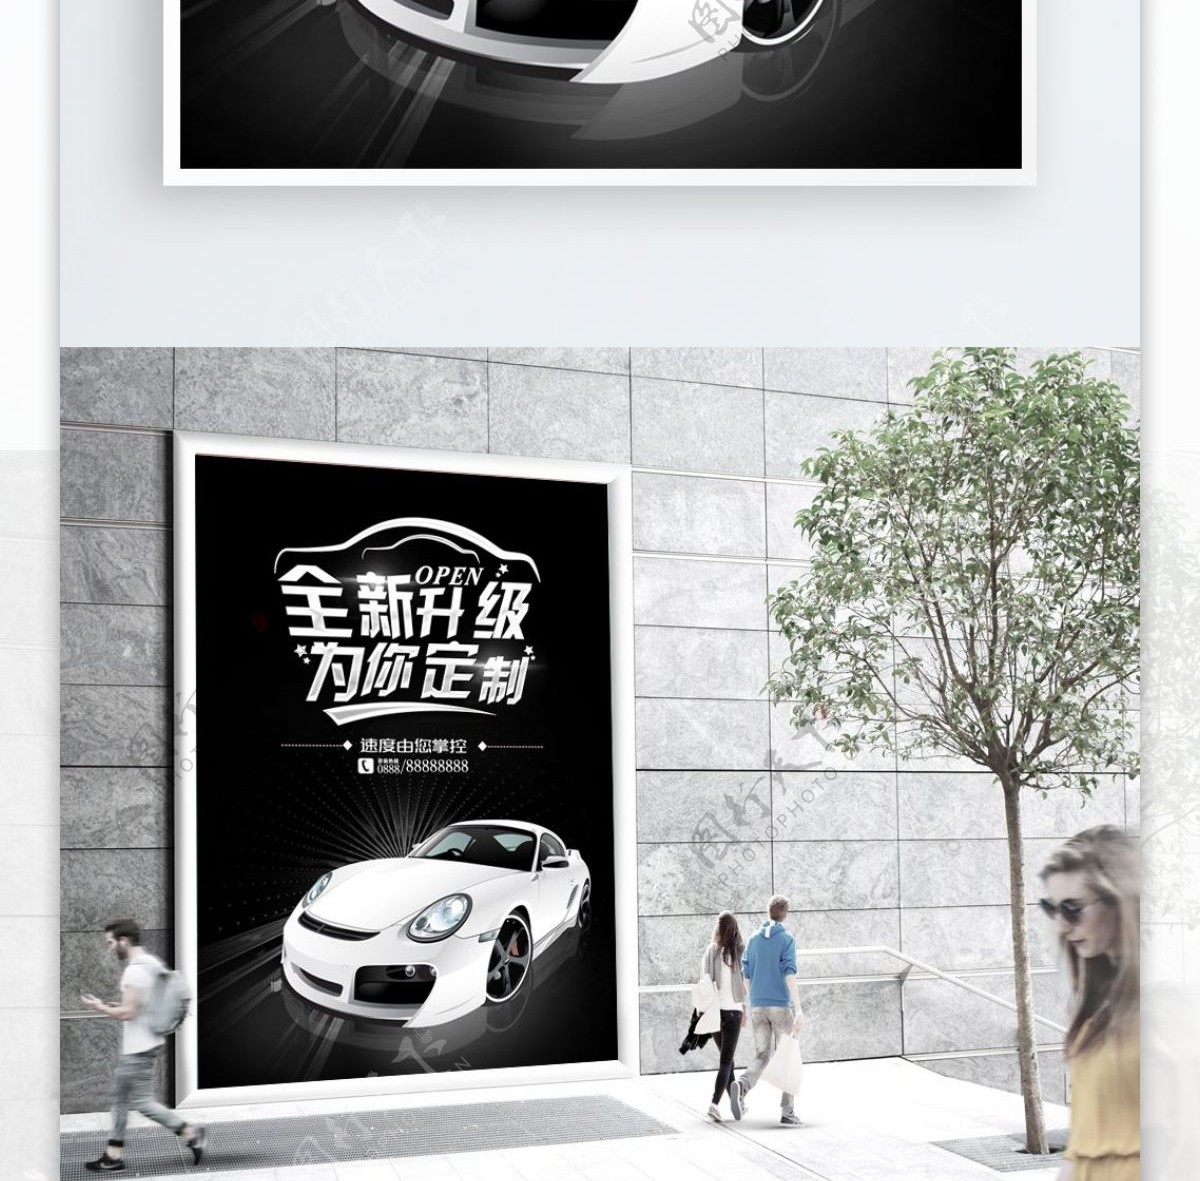 黑色白色汽车促销宣传海报